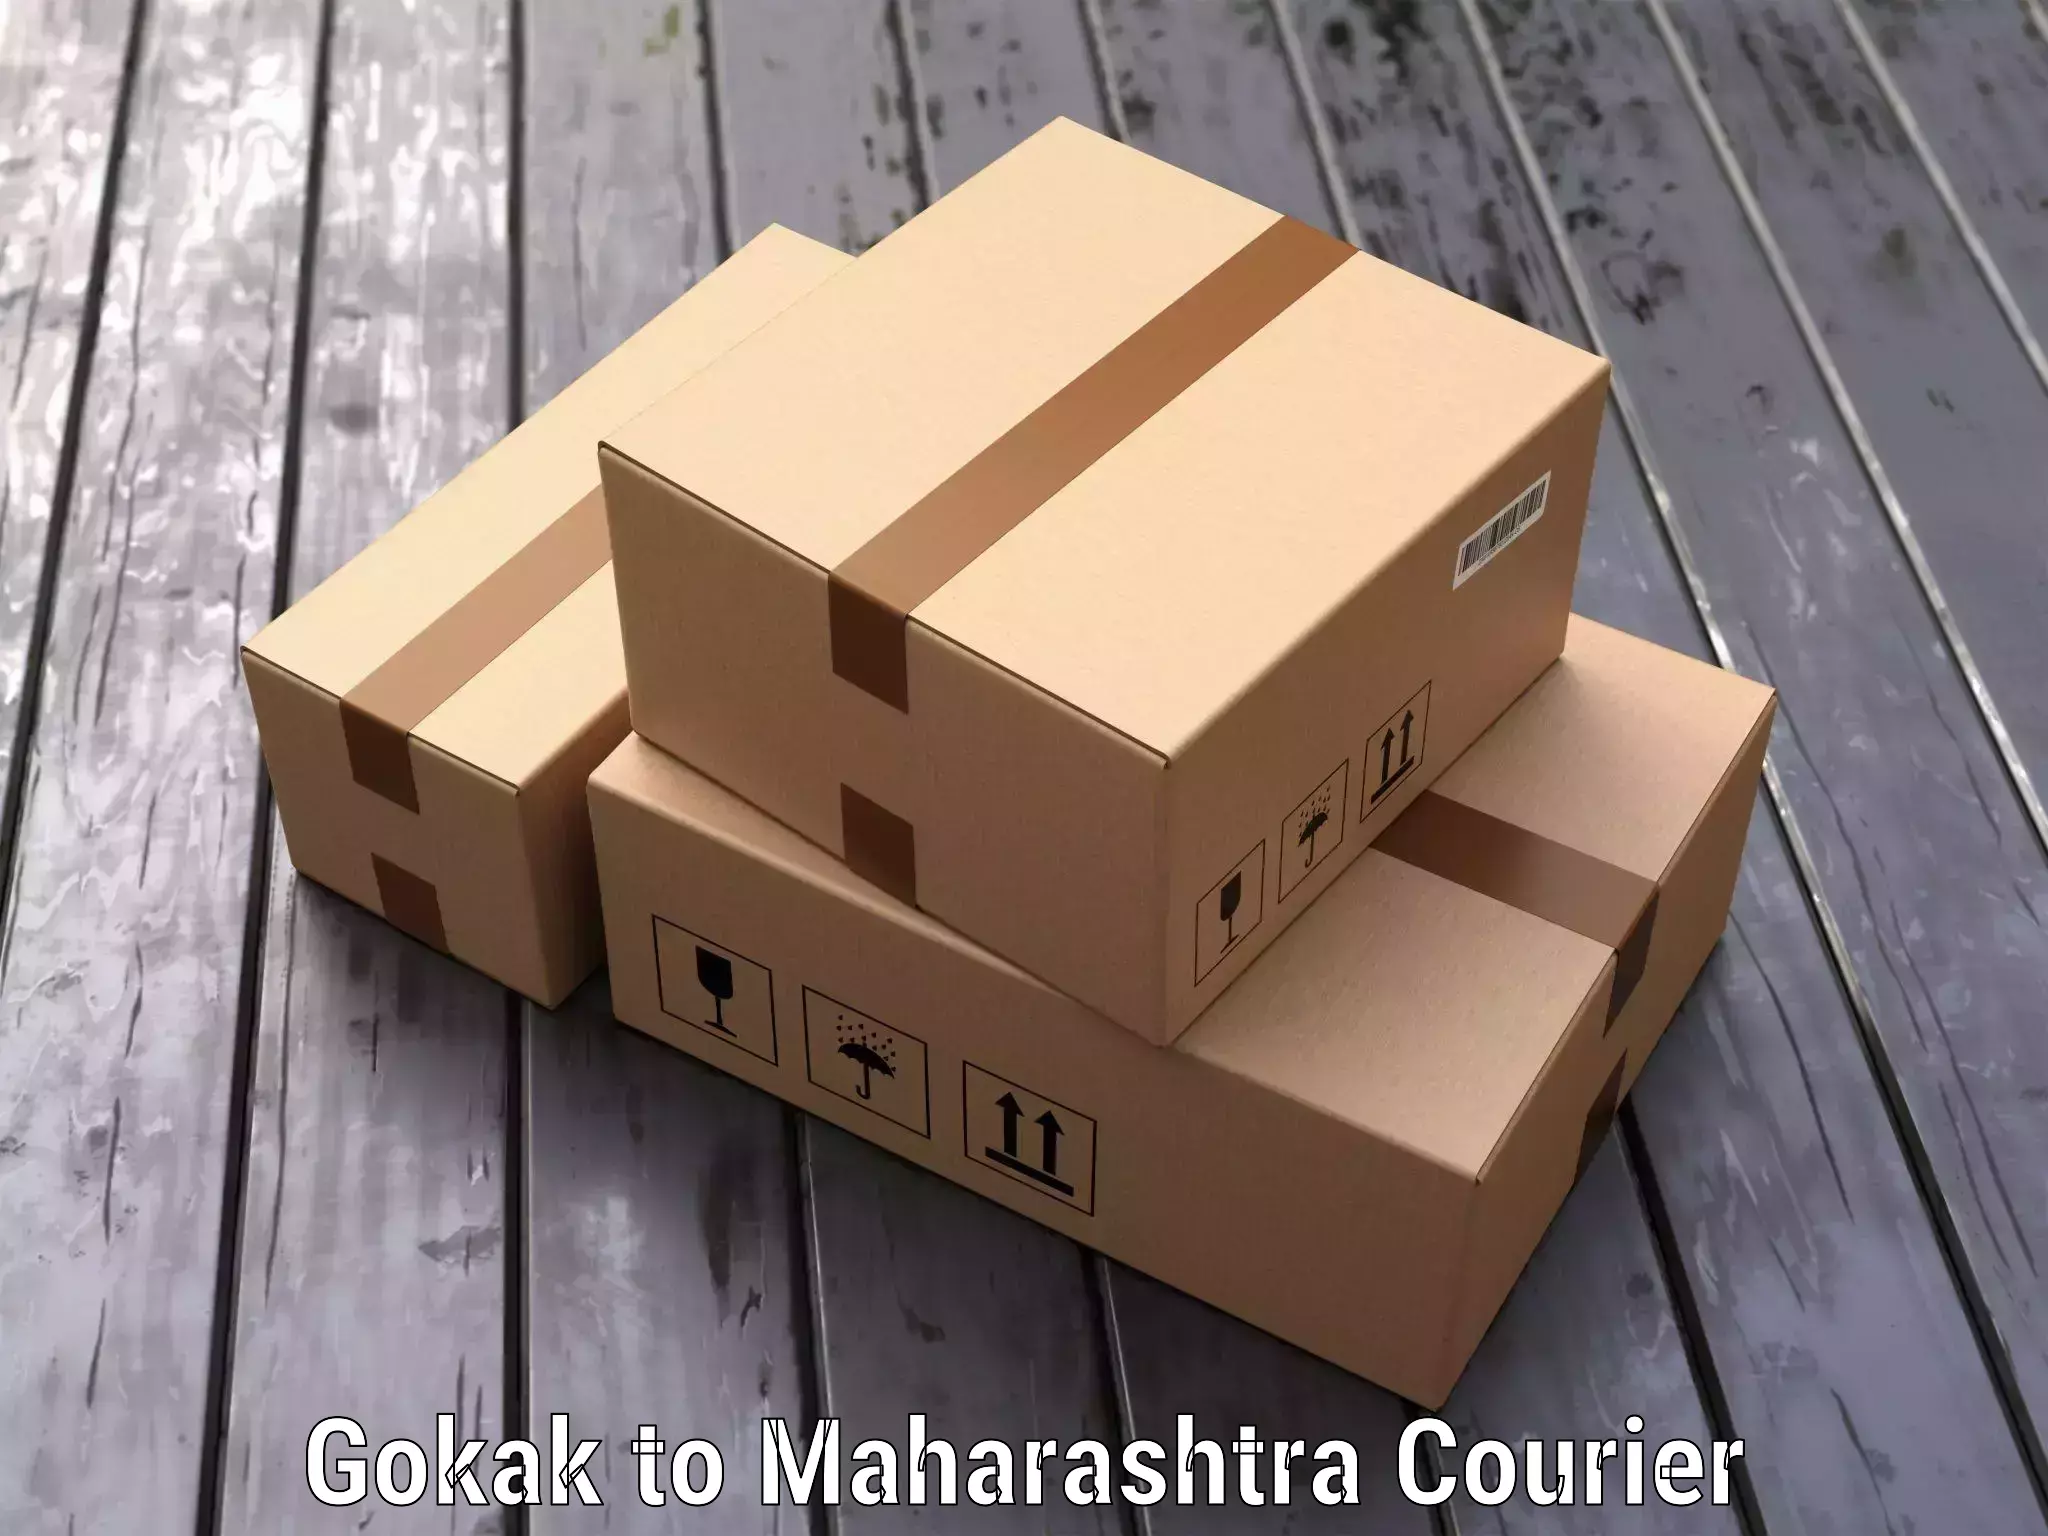 Luggage transport consultancy Gokak to Maharashtra